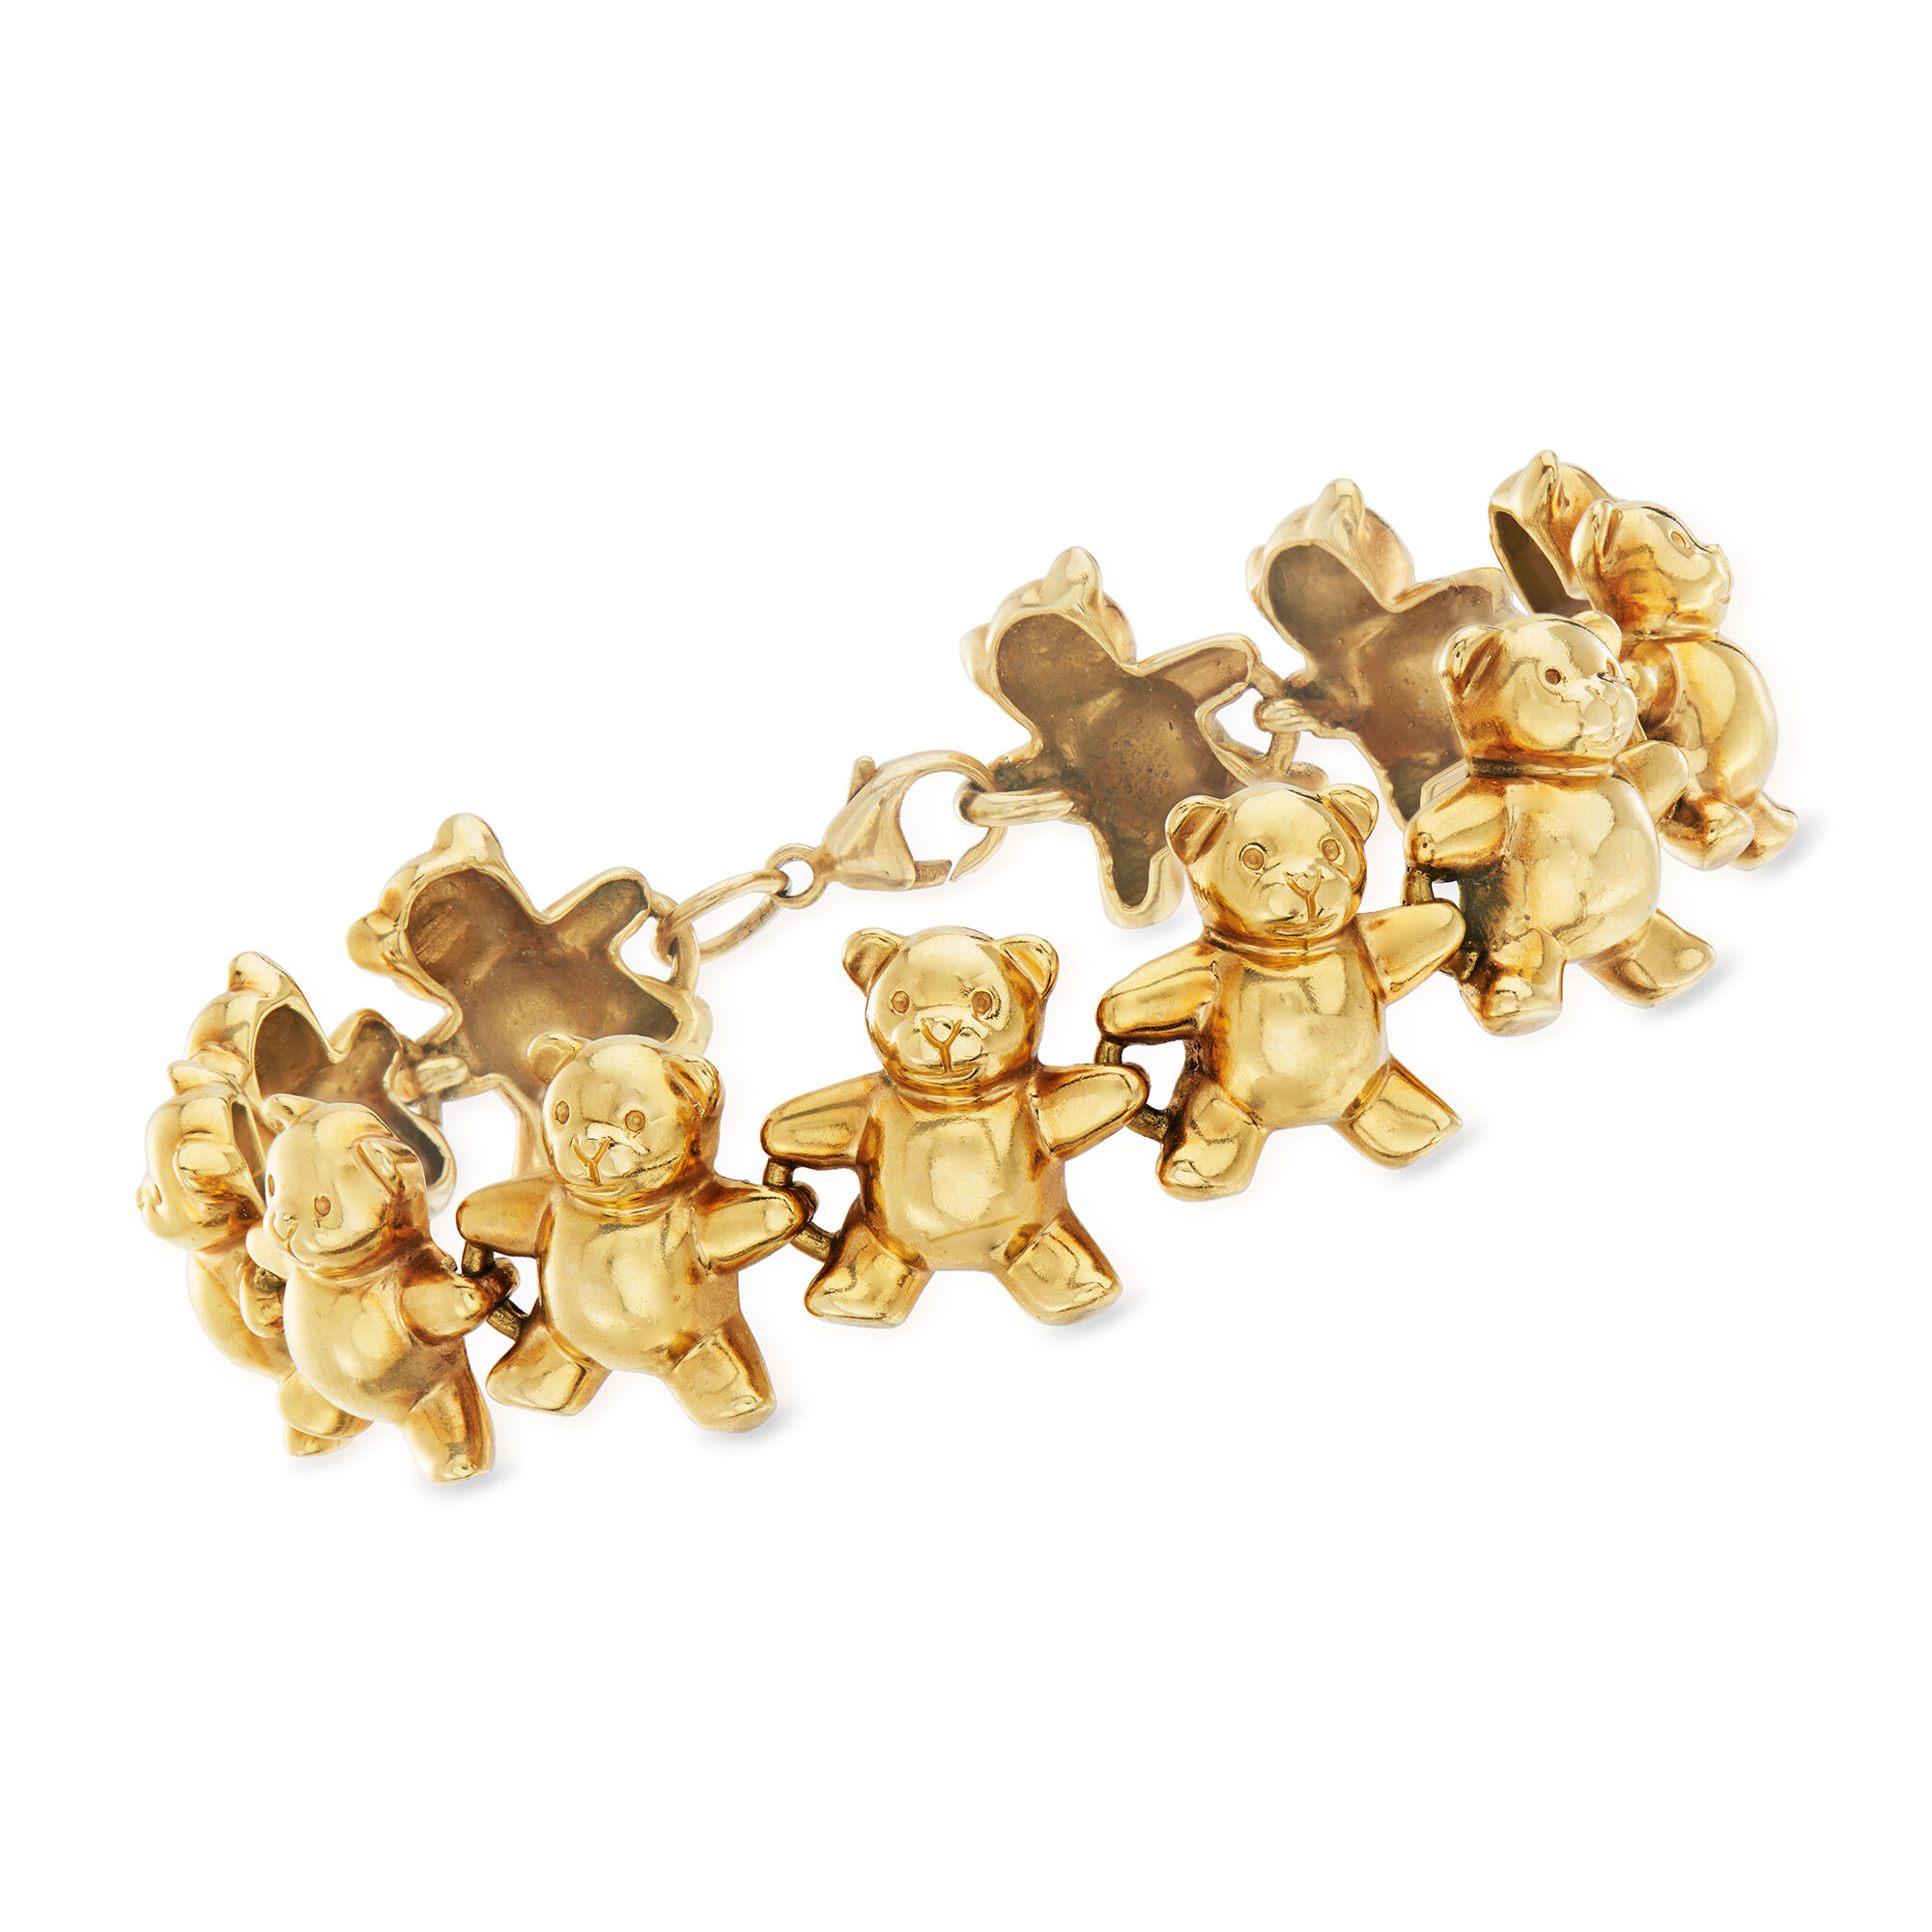 teddy bear bracelet